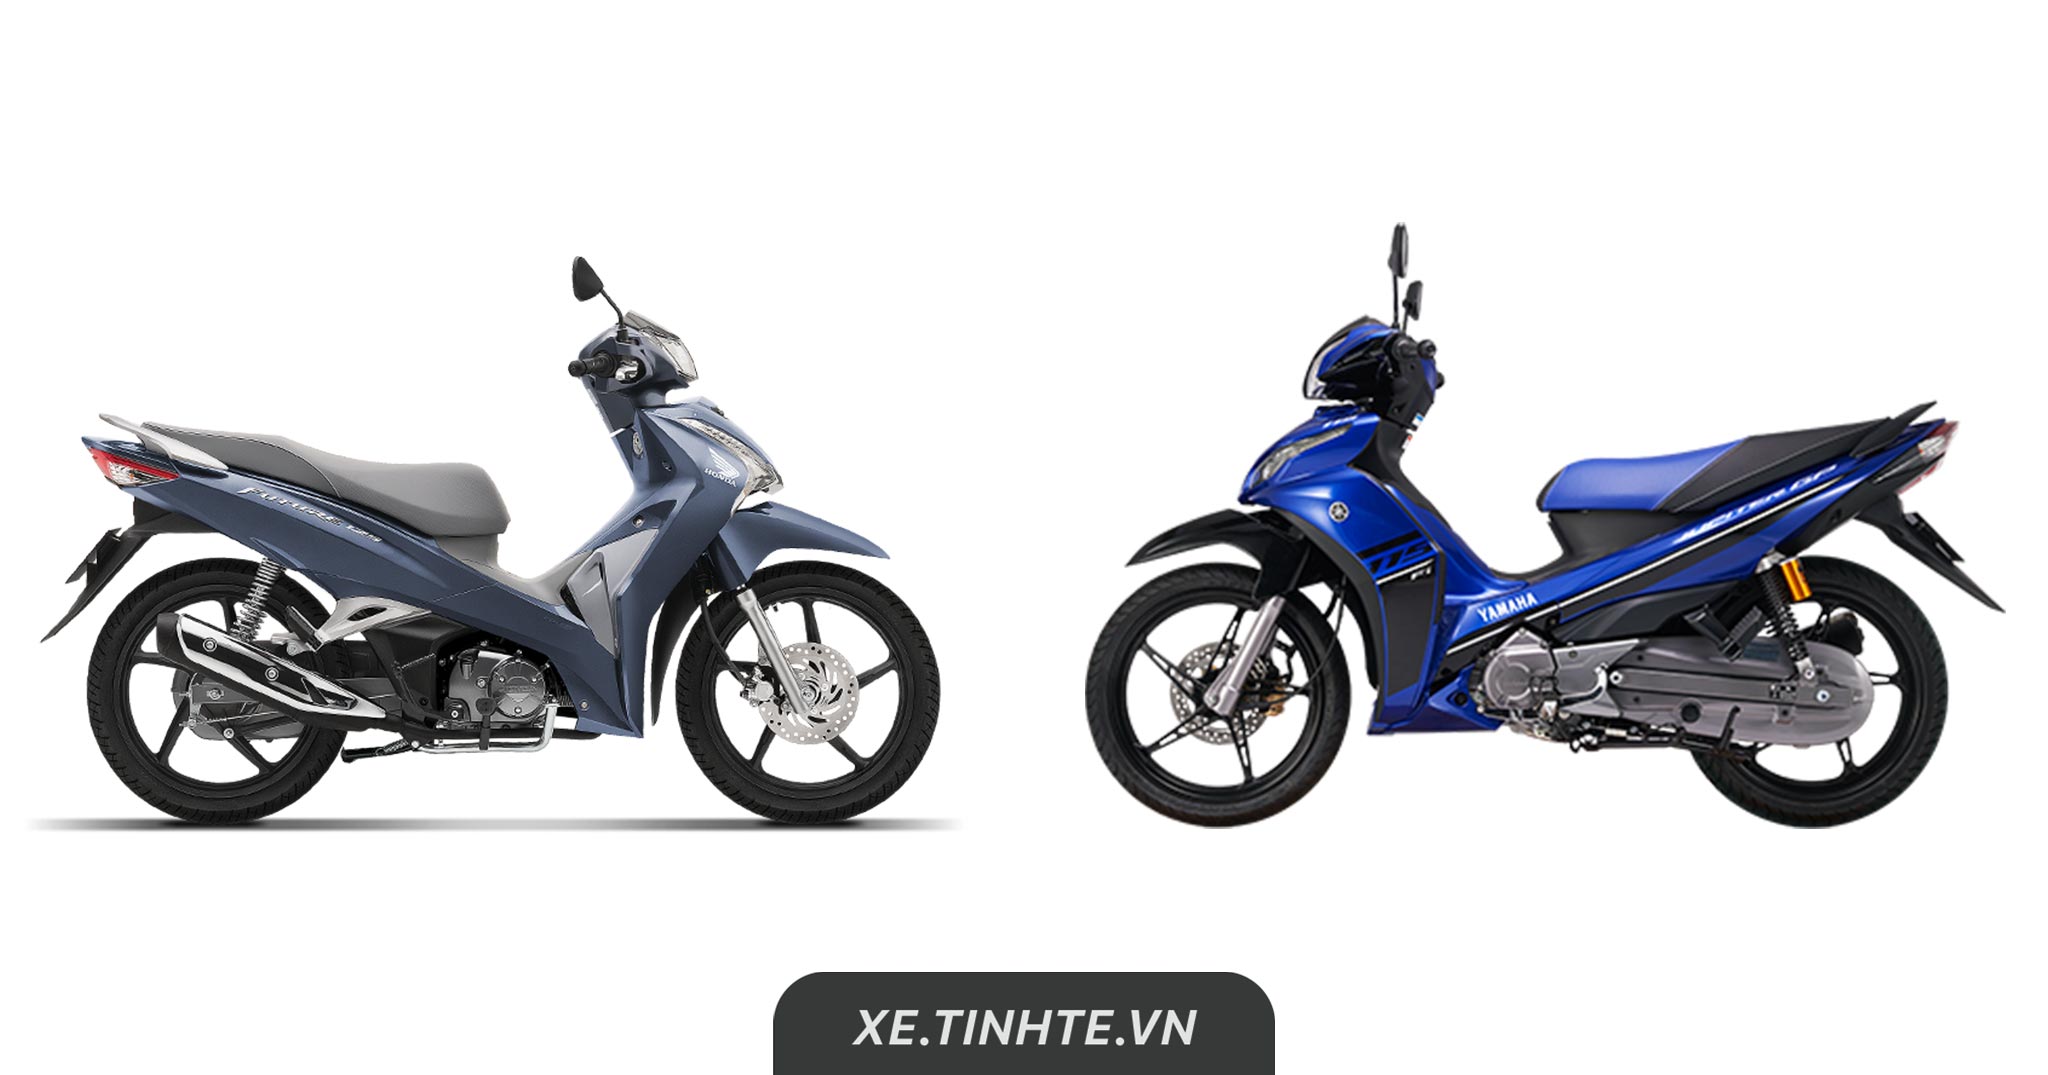 So sánh thông số kỹ thuật: Chọn Honda Future hay Yamaha Jupiter ở tầm tiền 30 triệu?